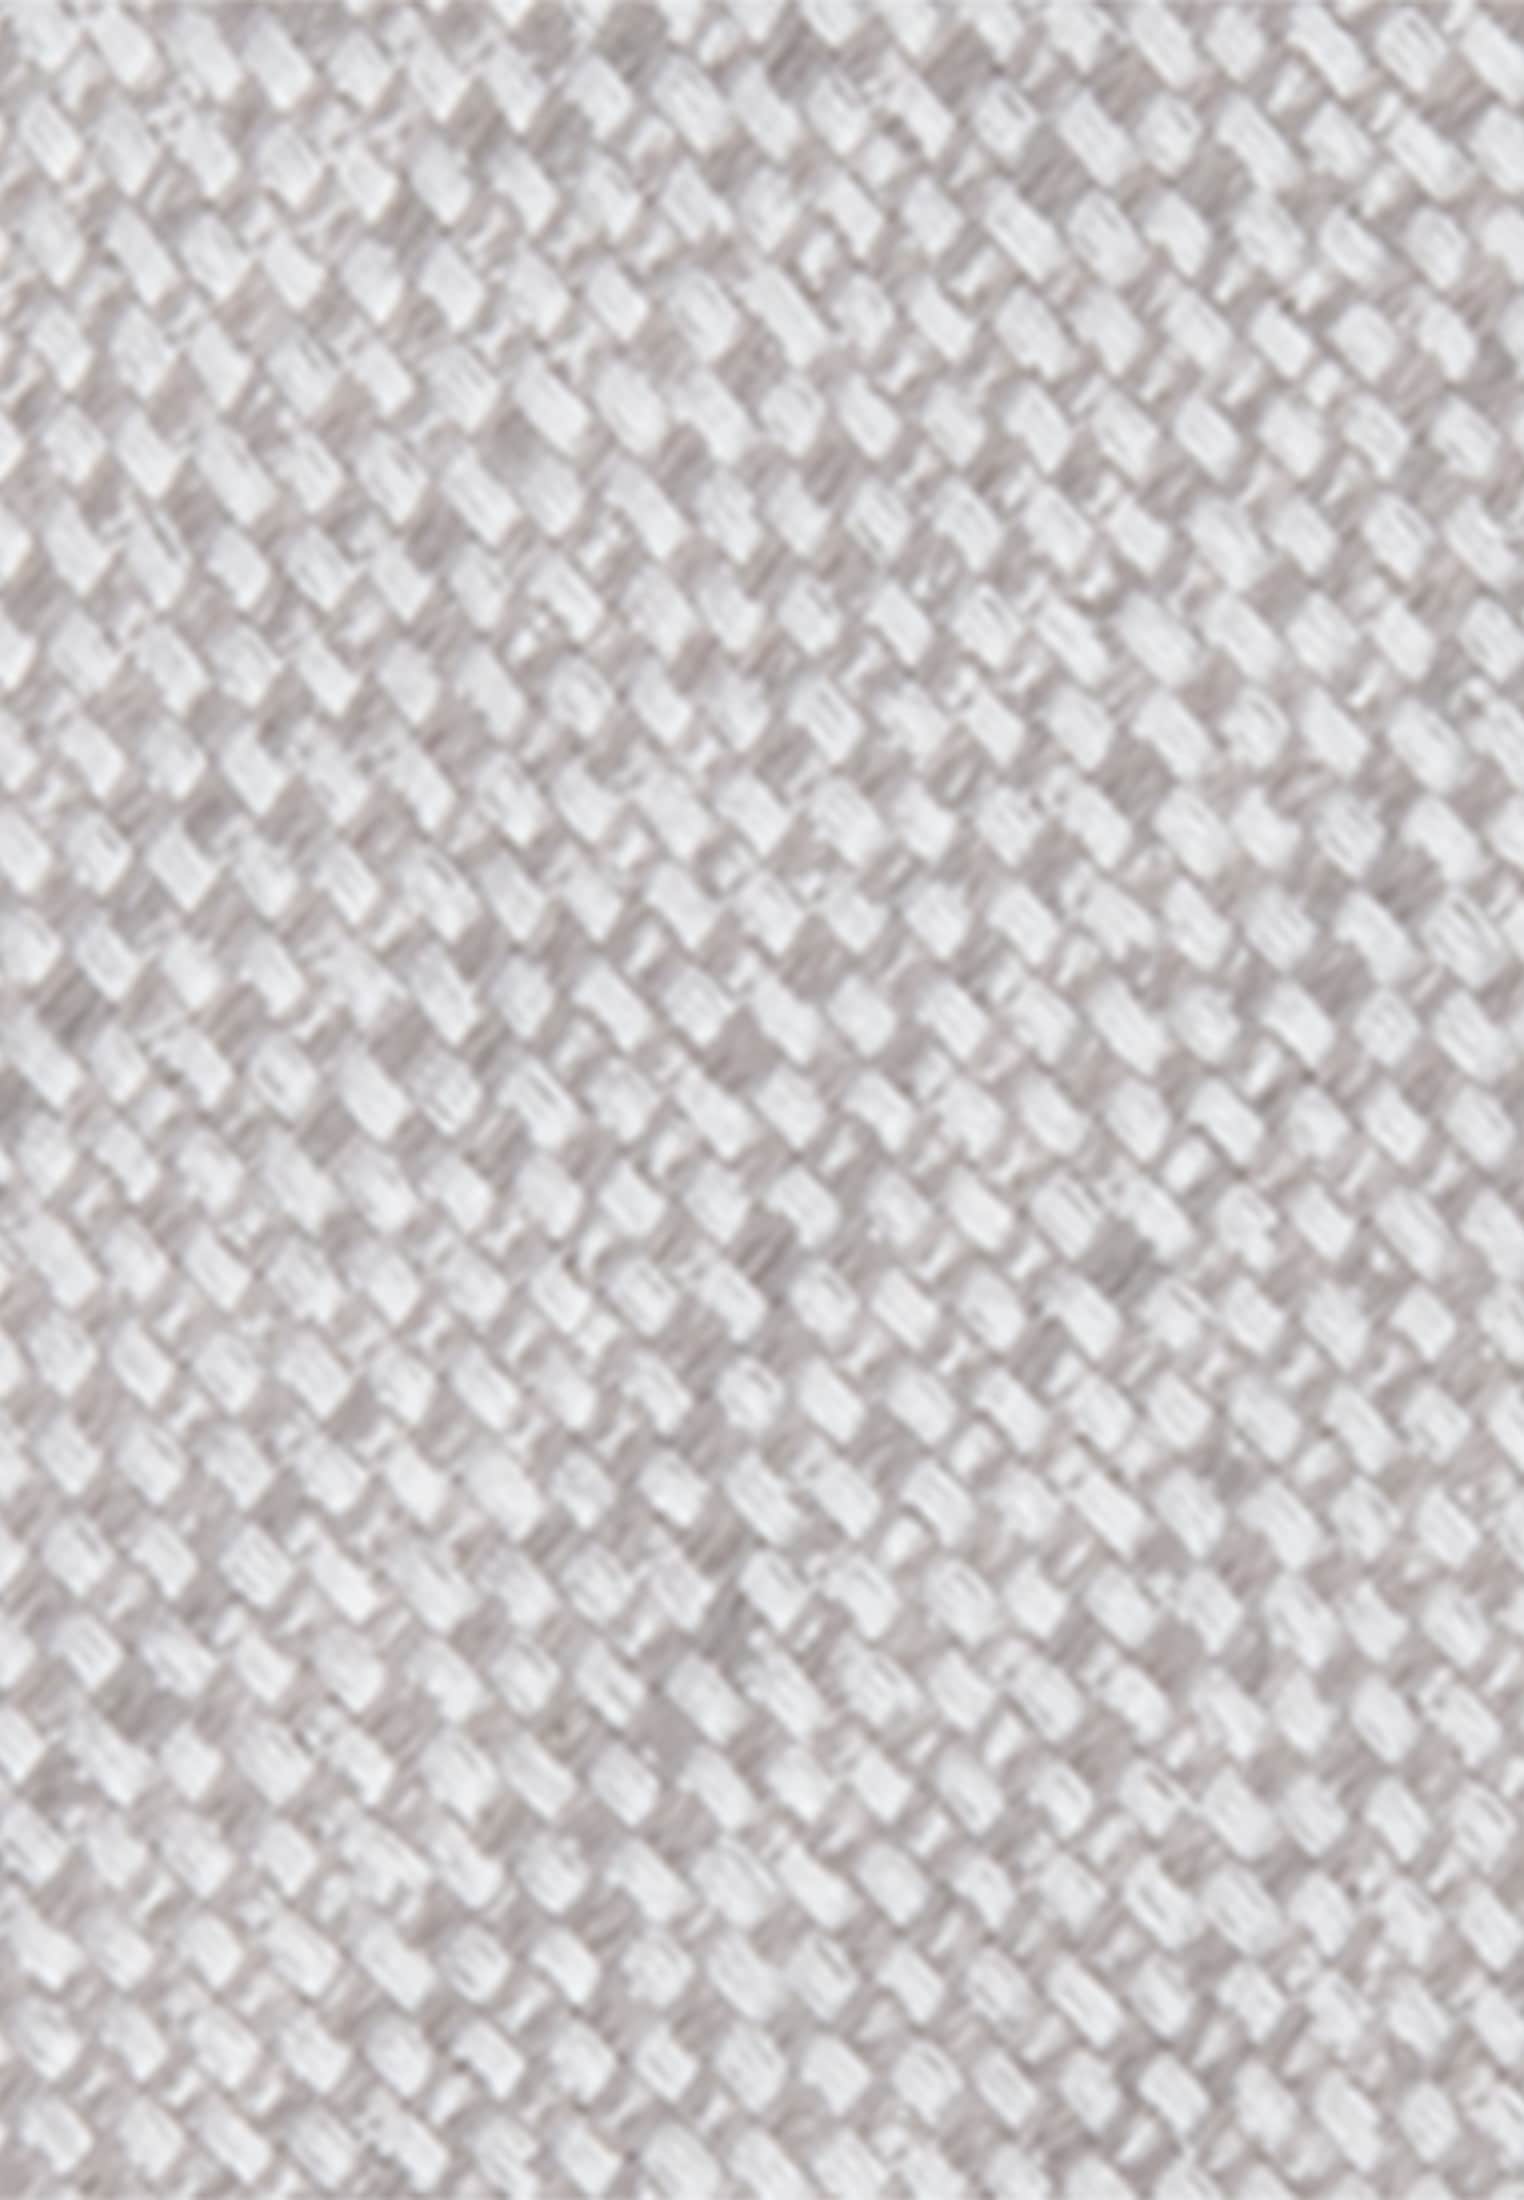 seidensticker Krawatte »Slim«, Schmal (5cm) uni Melange online kaufen |  UNIVERSAL